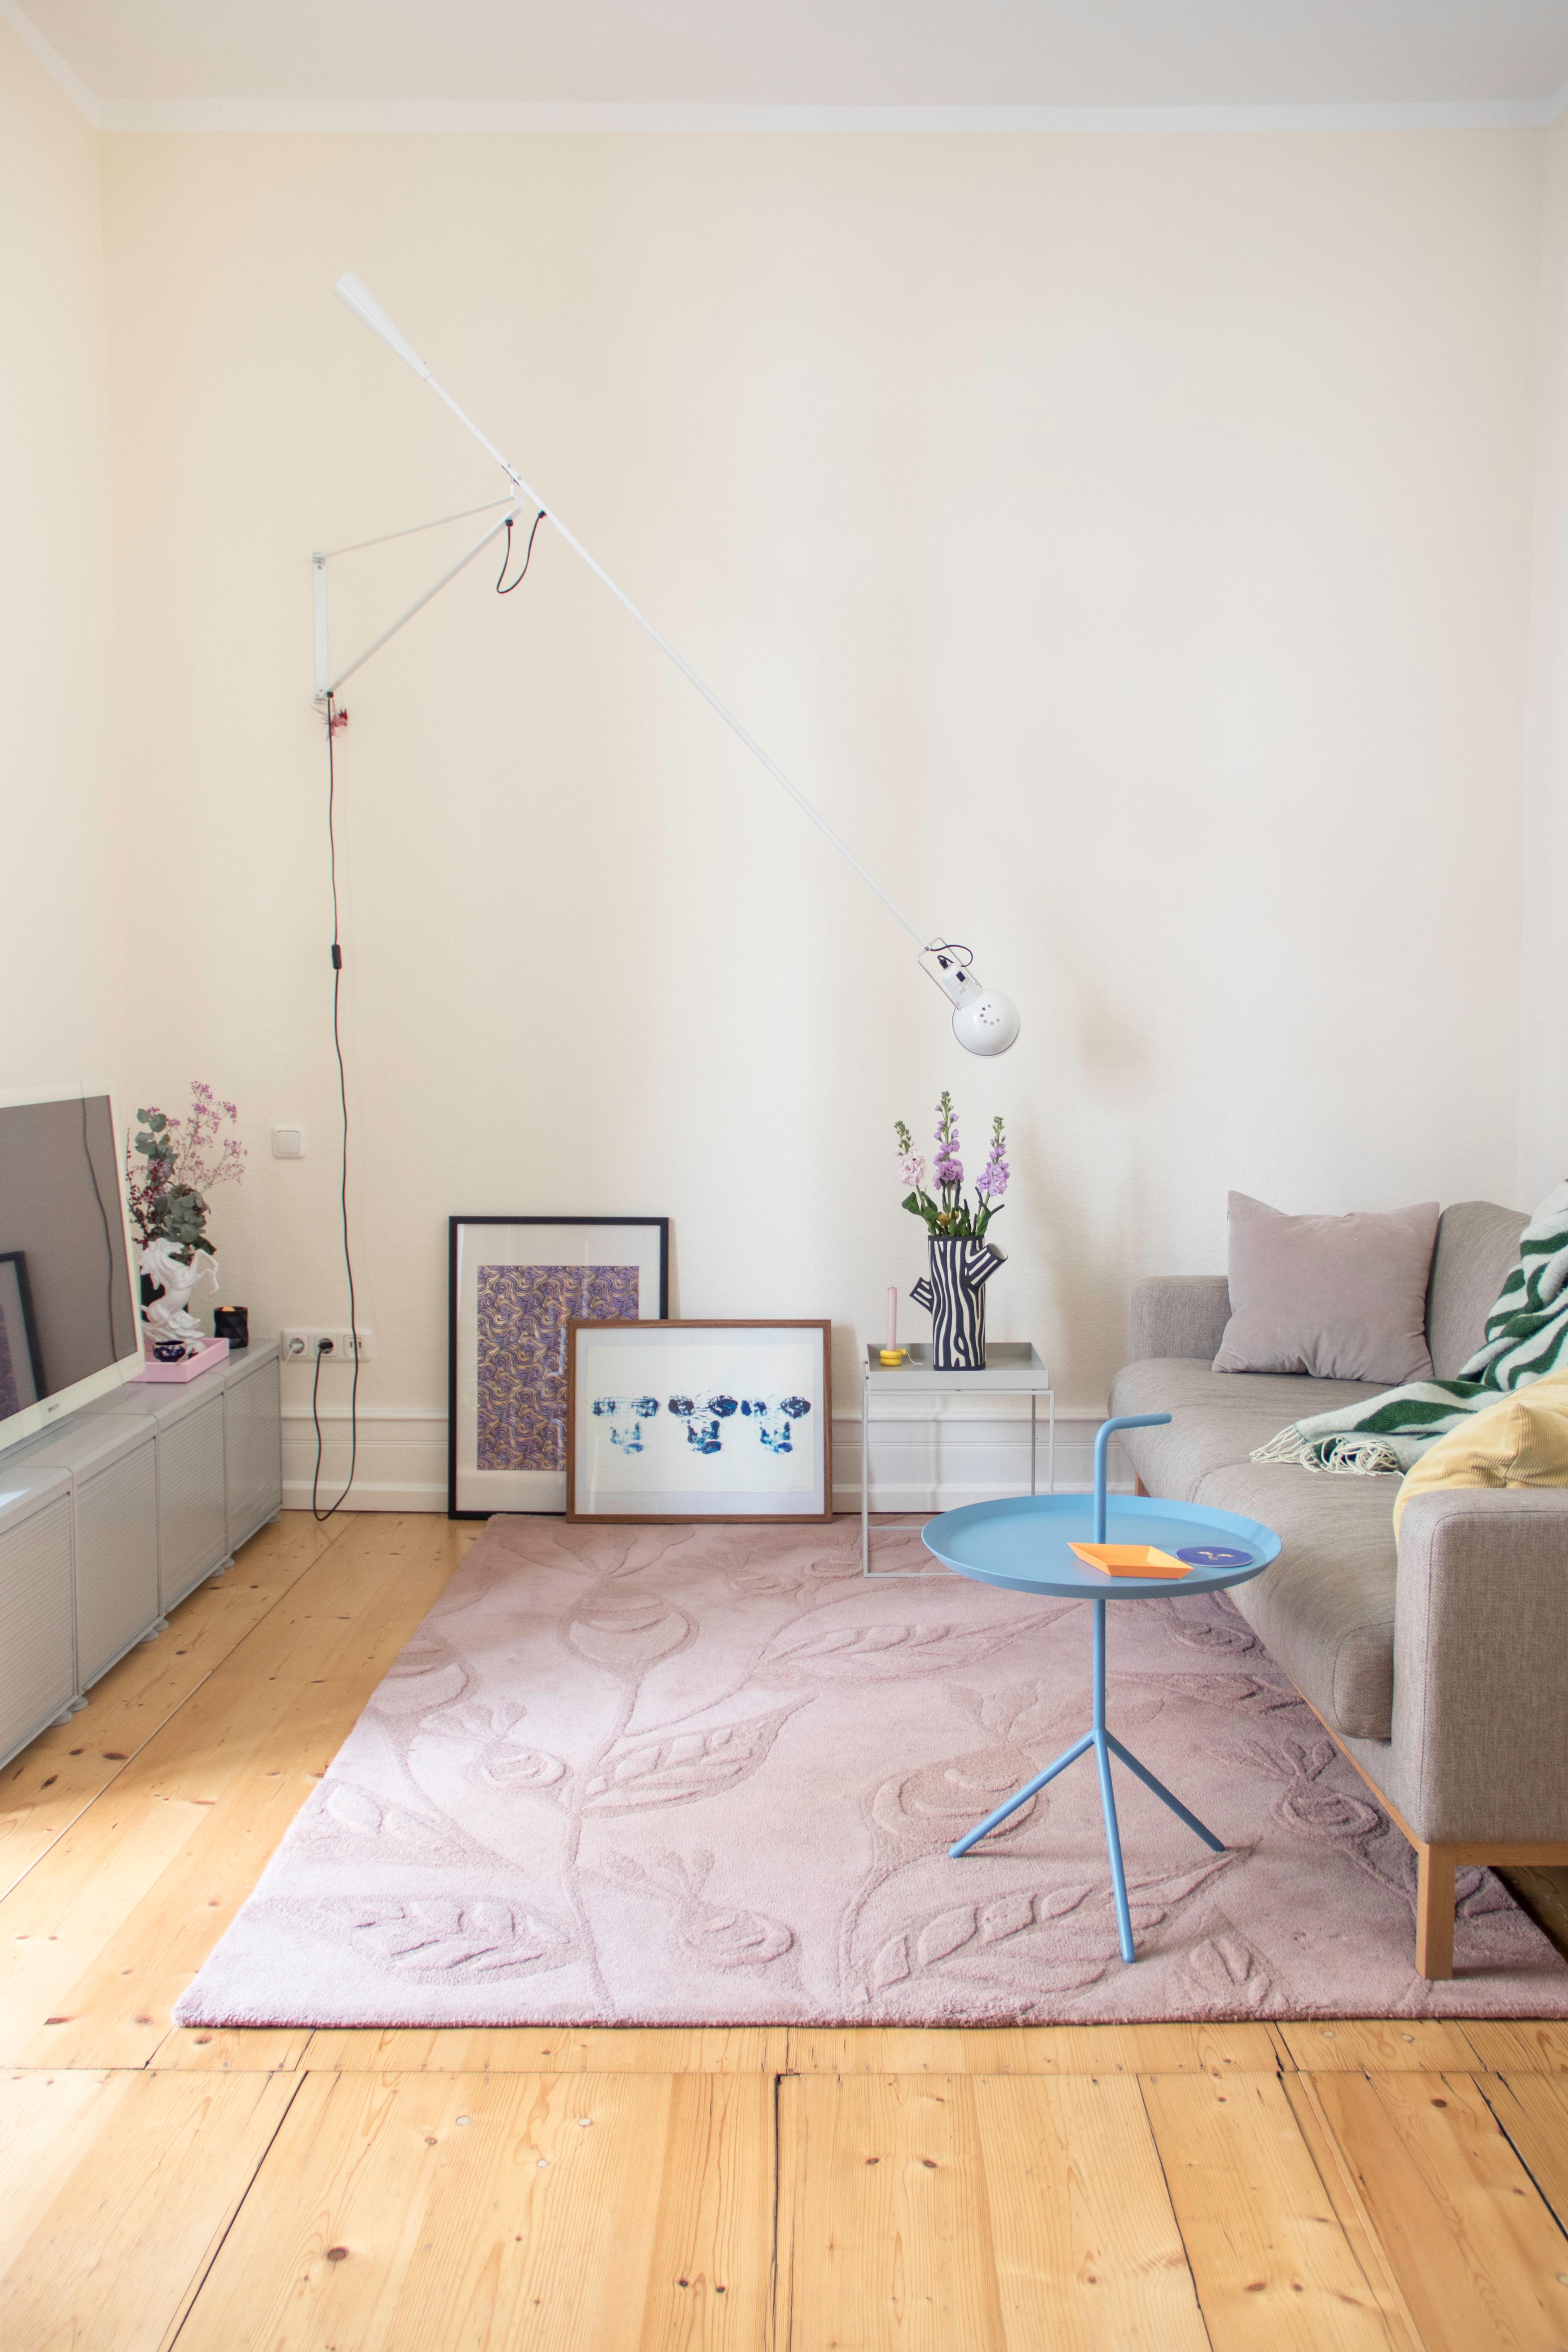 #Wohnzimmer #Couchliebt #Wandleuchte #Lampe #Farbenfroh #Teppich #Altbau #Holzdielen #Sofa #Pastell #Rosa #Blumen